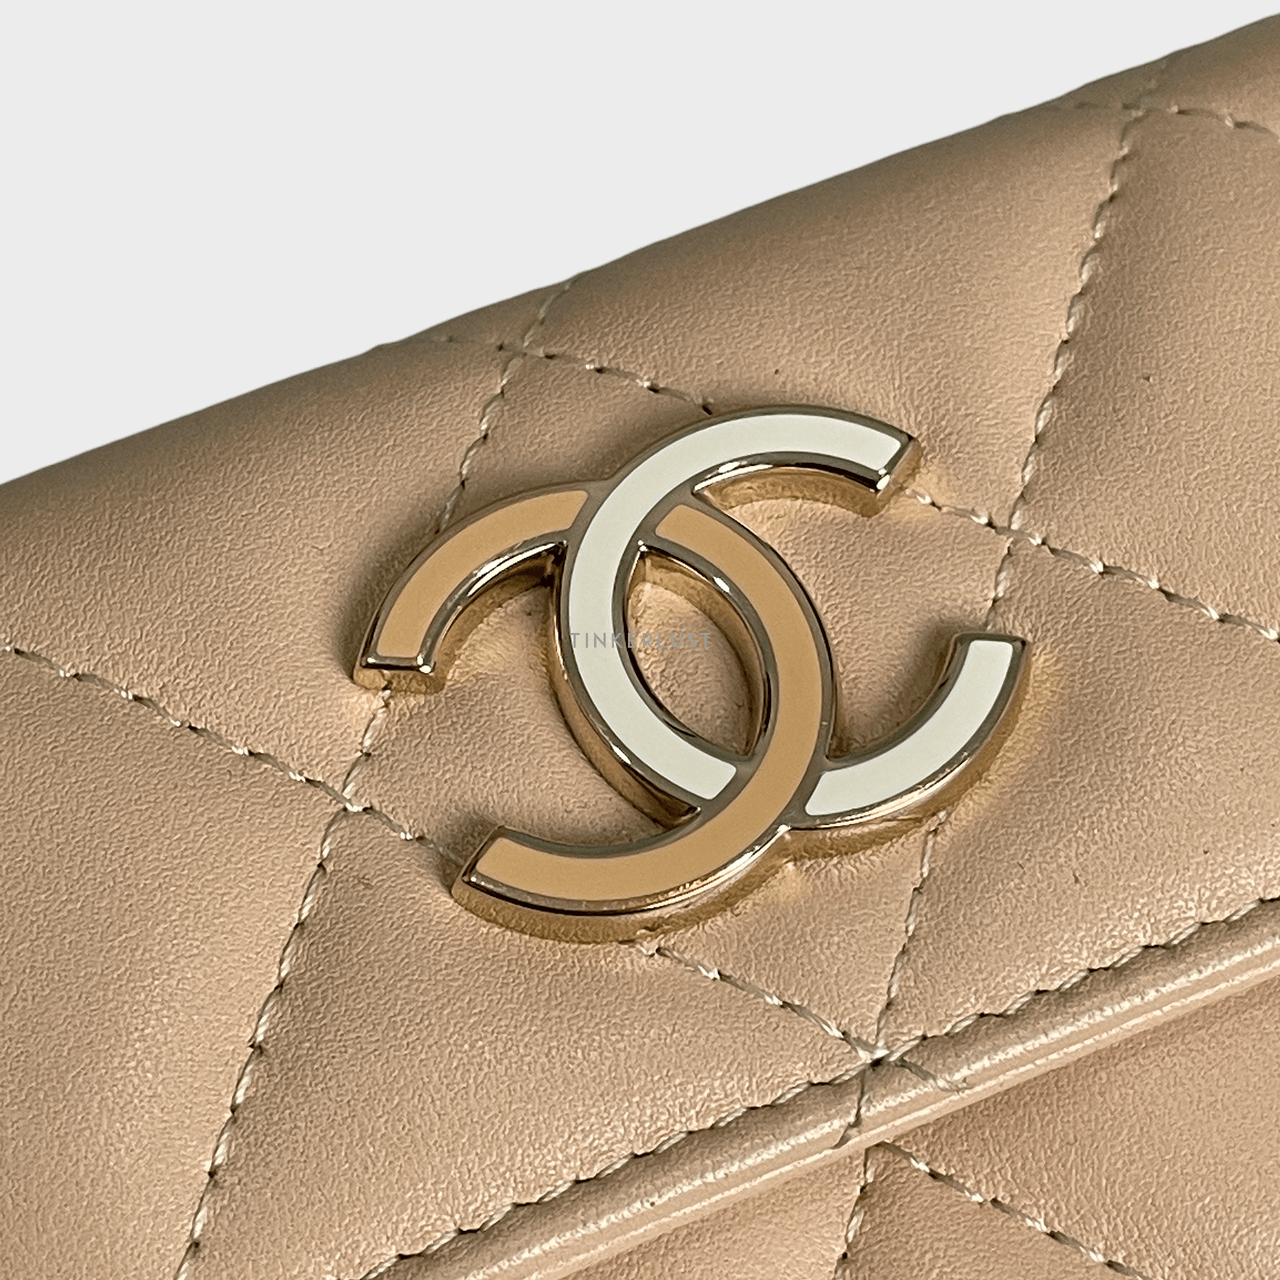 Chanel CC Quilted Enamel Beige Lambskin GHW Card Wallet